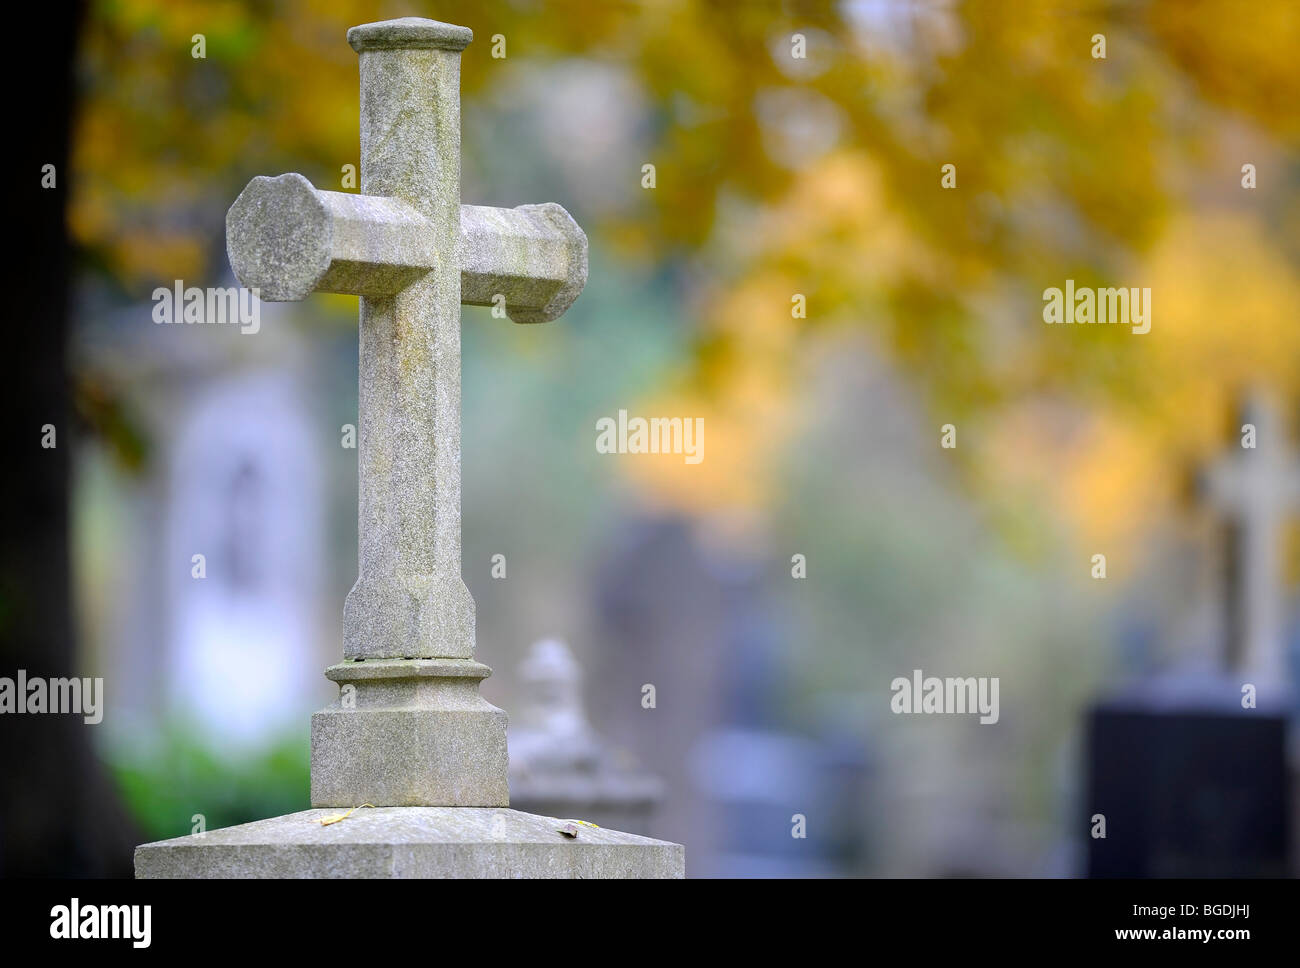 Grabstein mit hellem Stein überqueren vor bunten Herbstlaub, München, Bayern, Deutschland, Europa Stockfoto